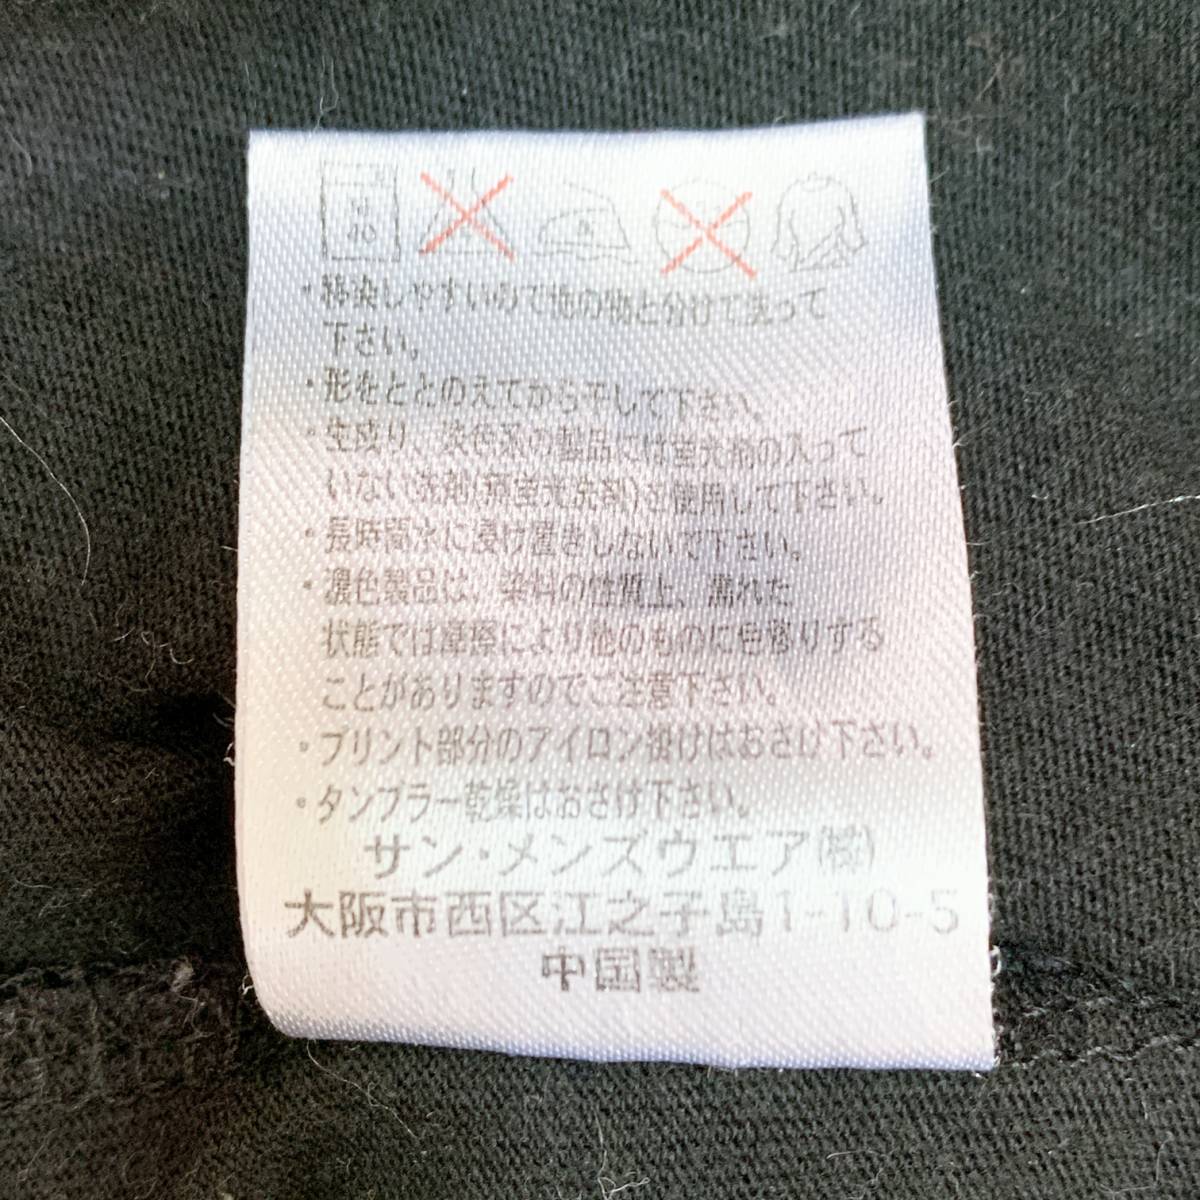 S2041 メンズ Tシャツ 半袖 人気 S 黒 ビッグロゴ 綿100% 万能 かわいい シンプルデイリーカジュアル くまモン _画像10